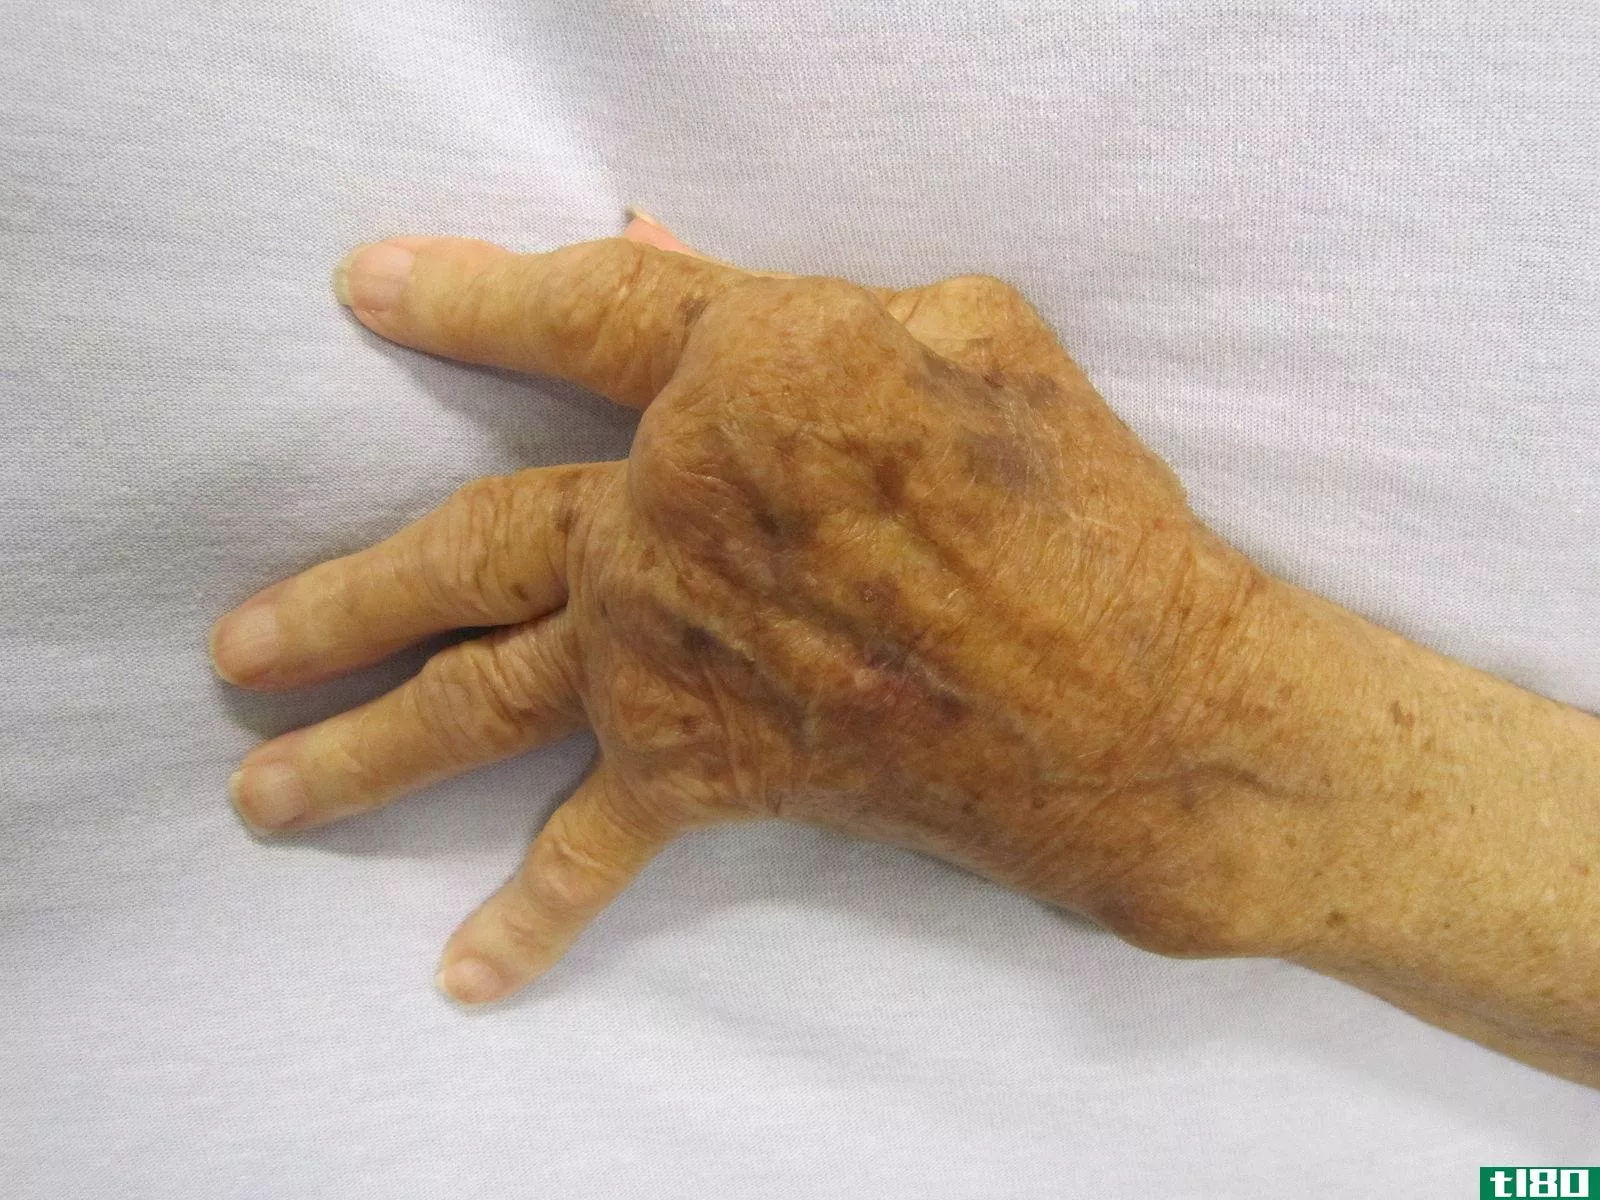 痛风(gout)和类风湿性关节炎(rheumatoid arthritis)的区别